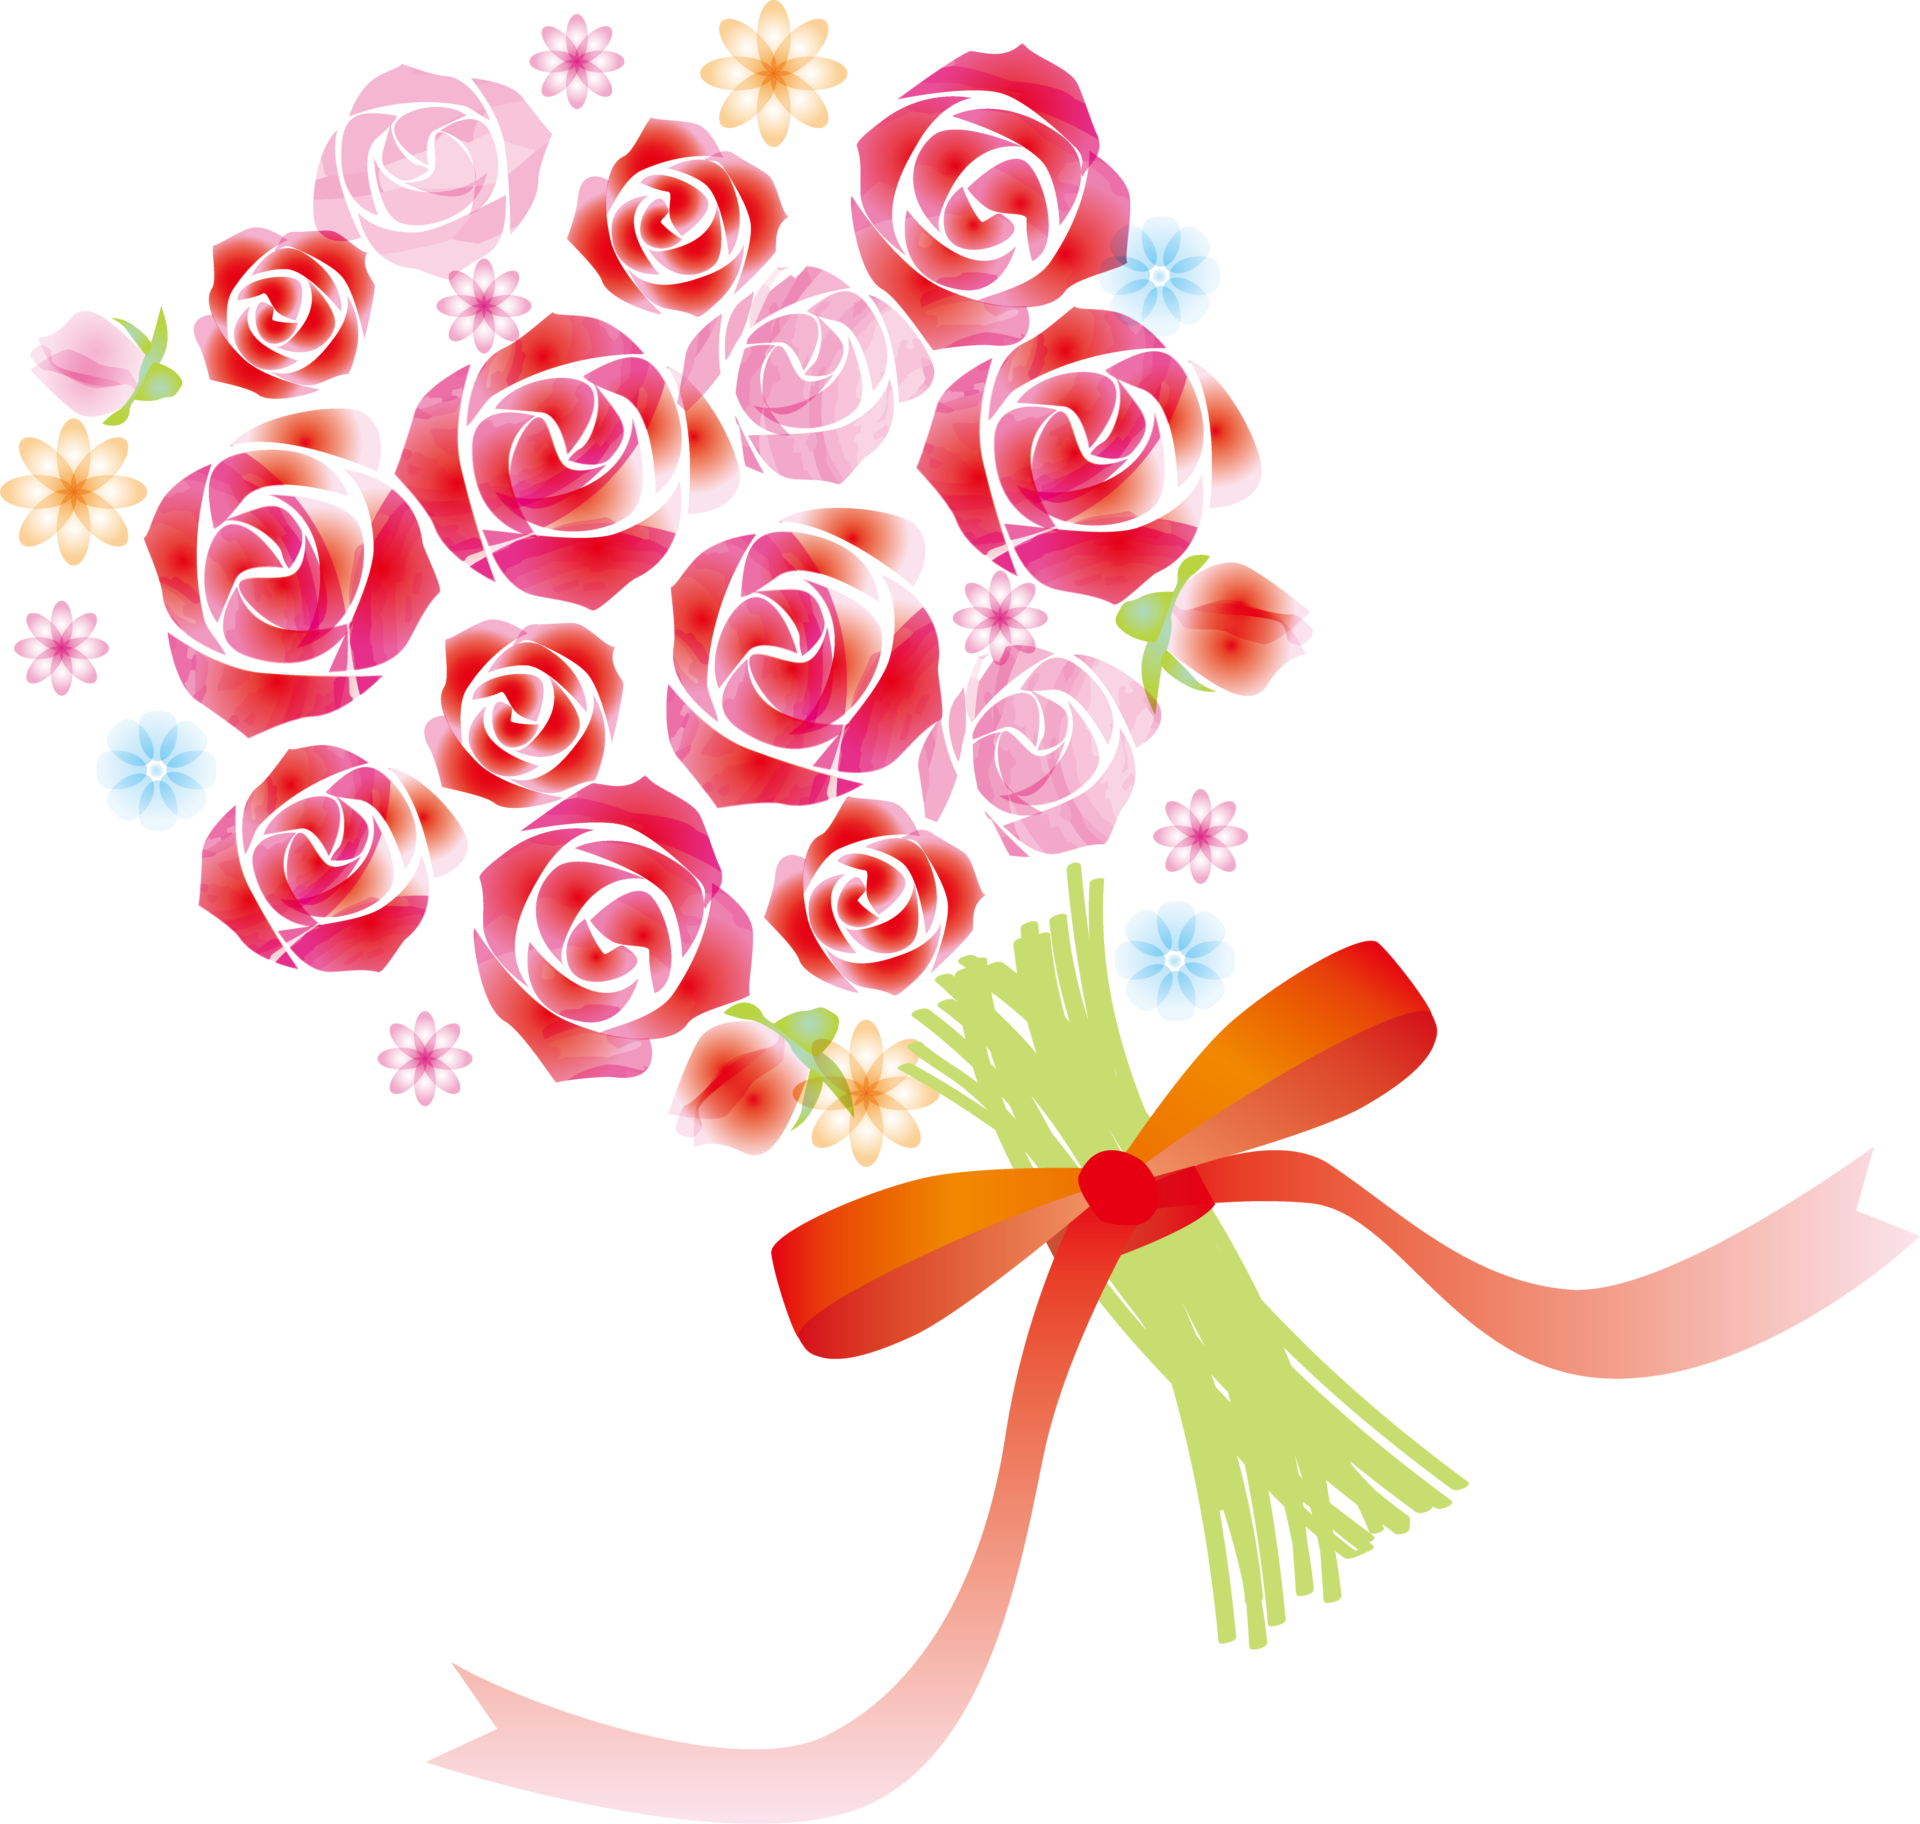 バラの花束でプロポーズ 本数と言葉の関係について解説 日々の問いかけ